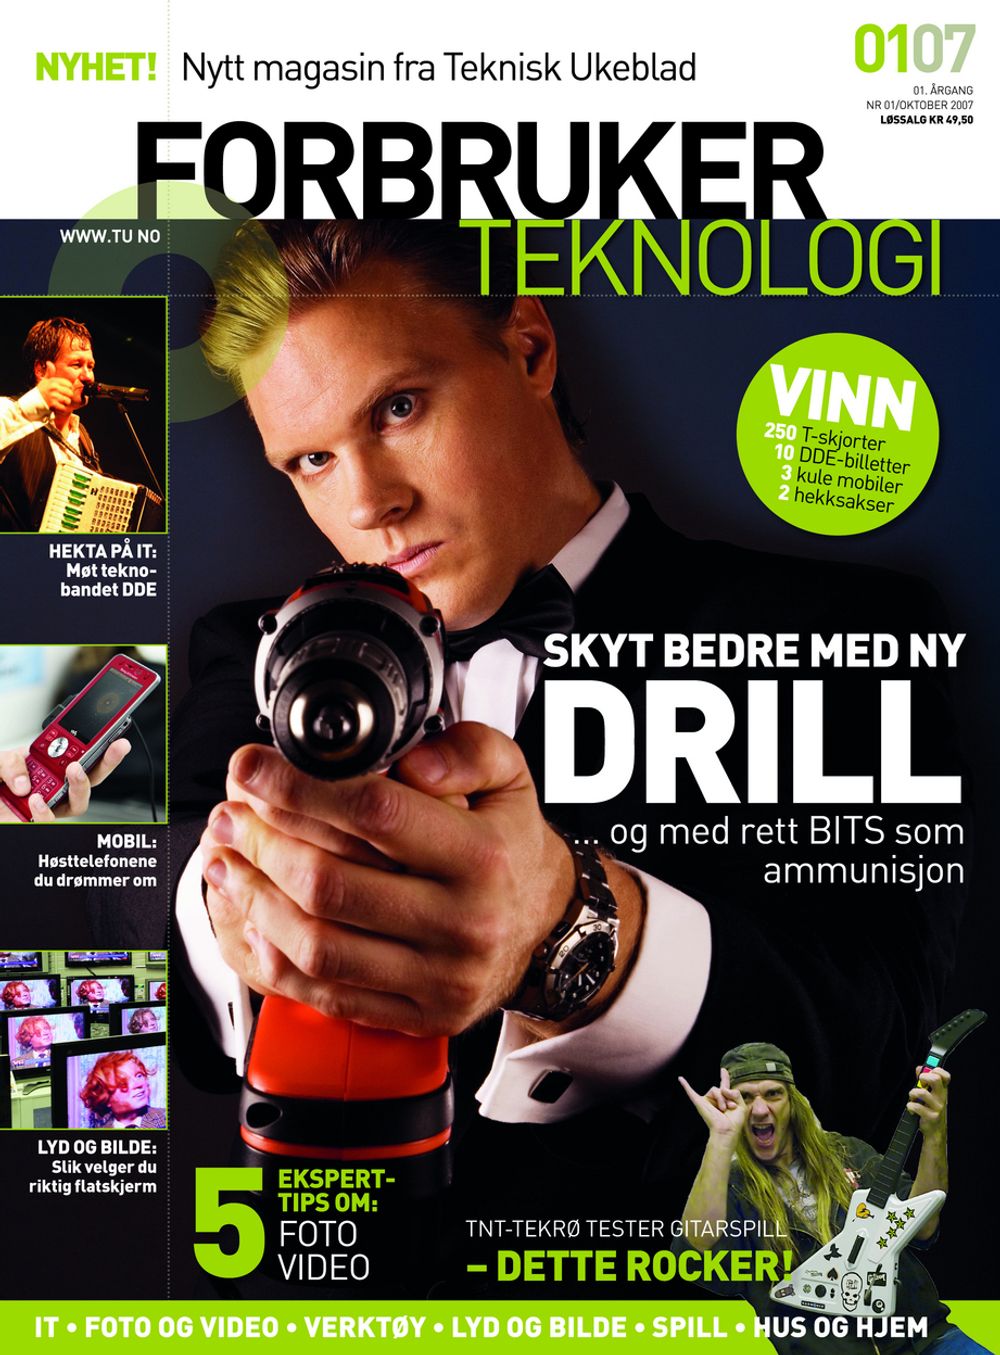 SE ETTER DETTE: Fredag 12. oktober kommer det nye magasinet Forbrukerteknologi. Opplaget er på hele 110 000 eksemplarer, som vil gjøre Forbrukerteknologi til Norges desidert største forbrukermagasin i sitt slag.